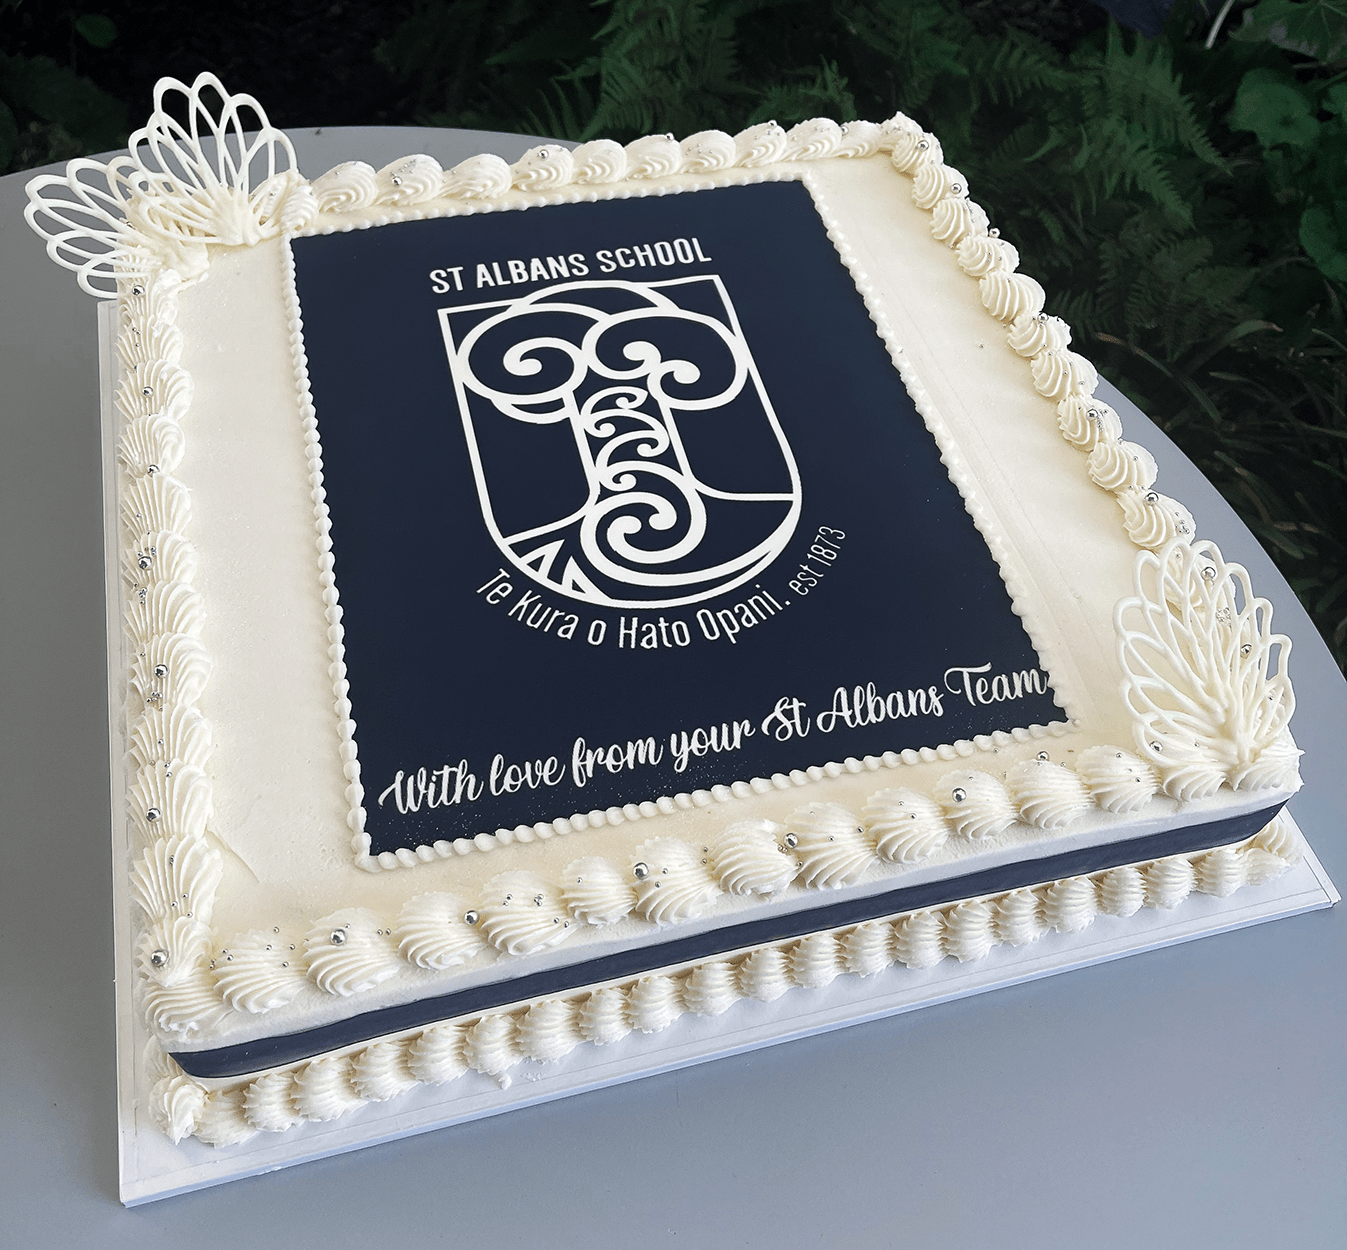 Melbourne Business School Big Cake Bake